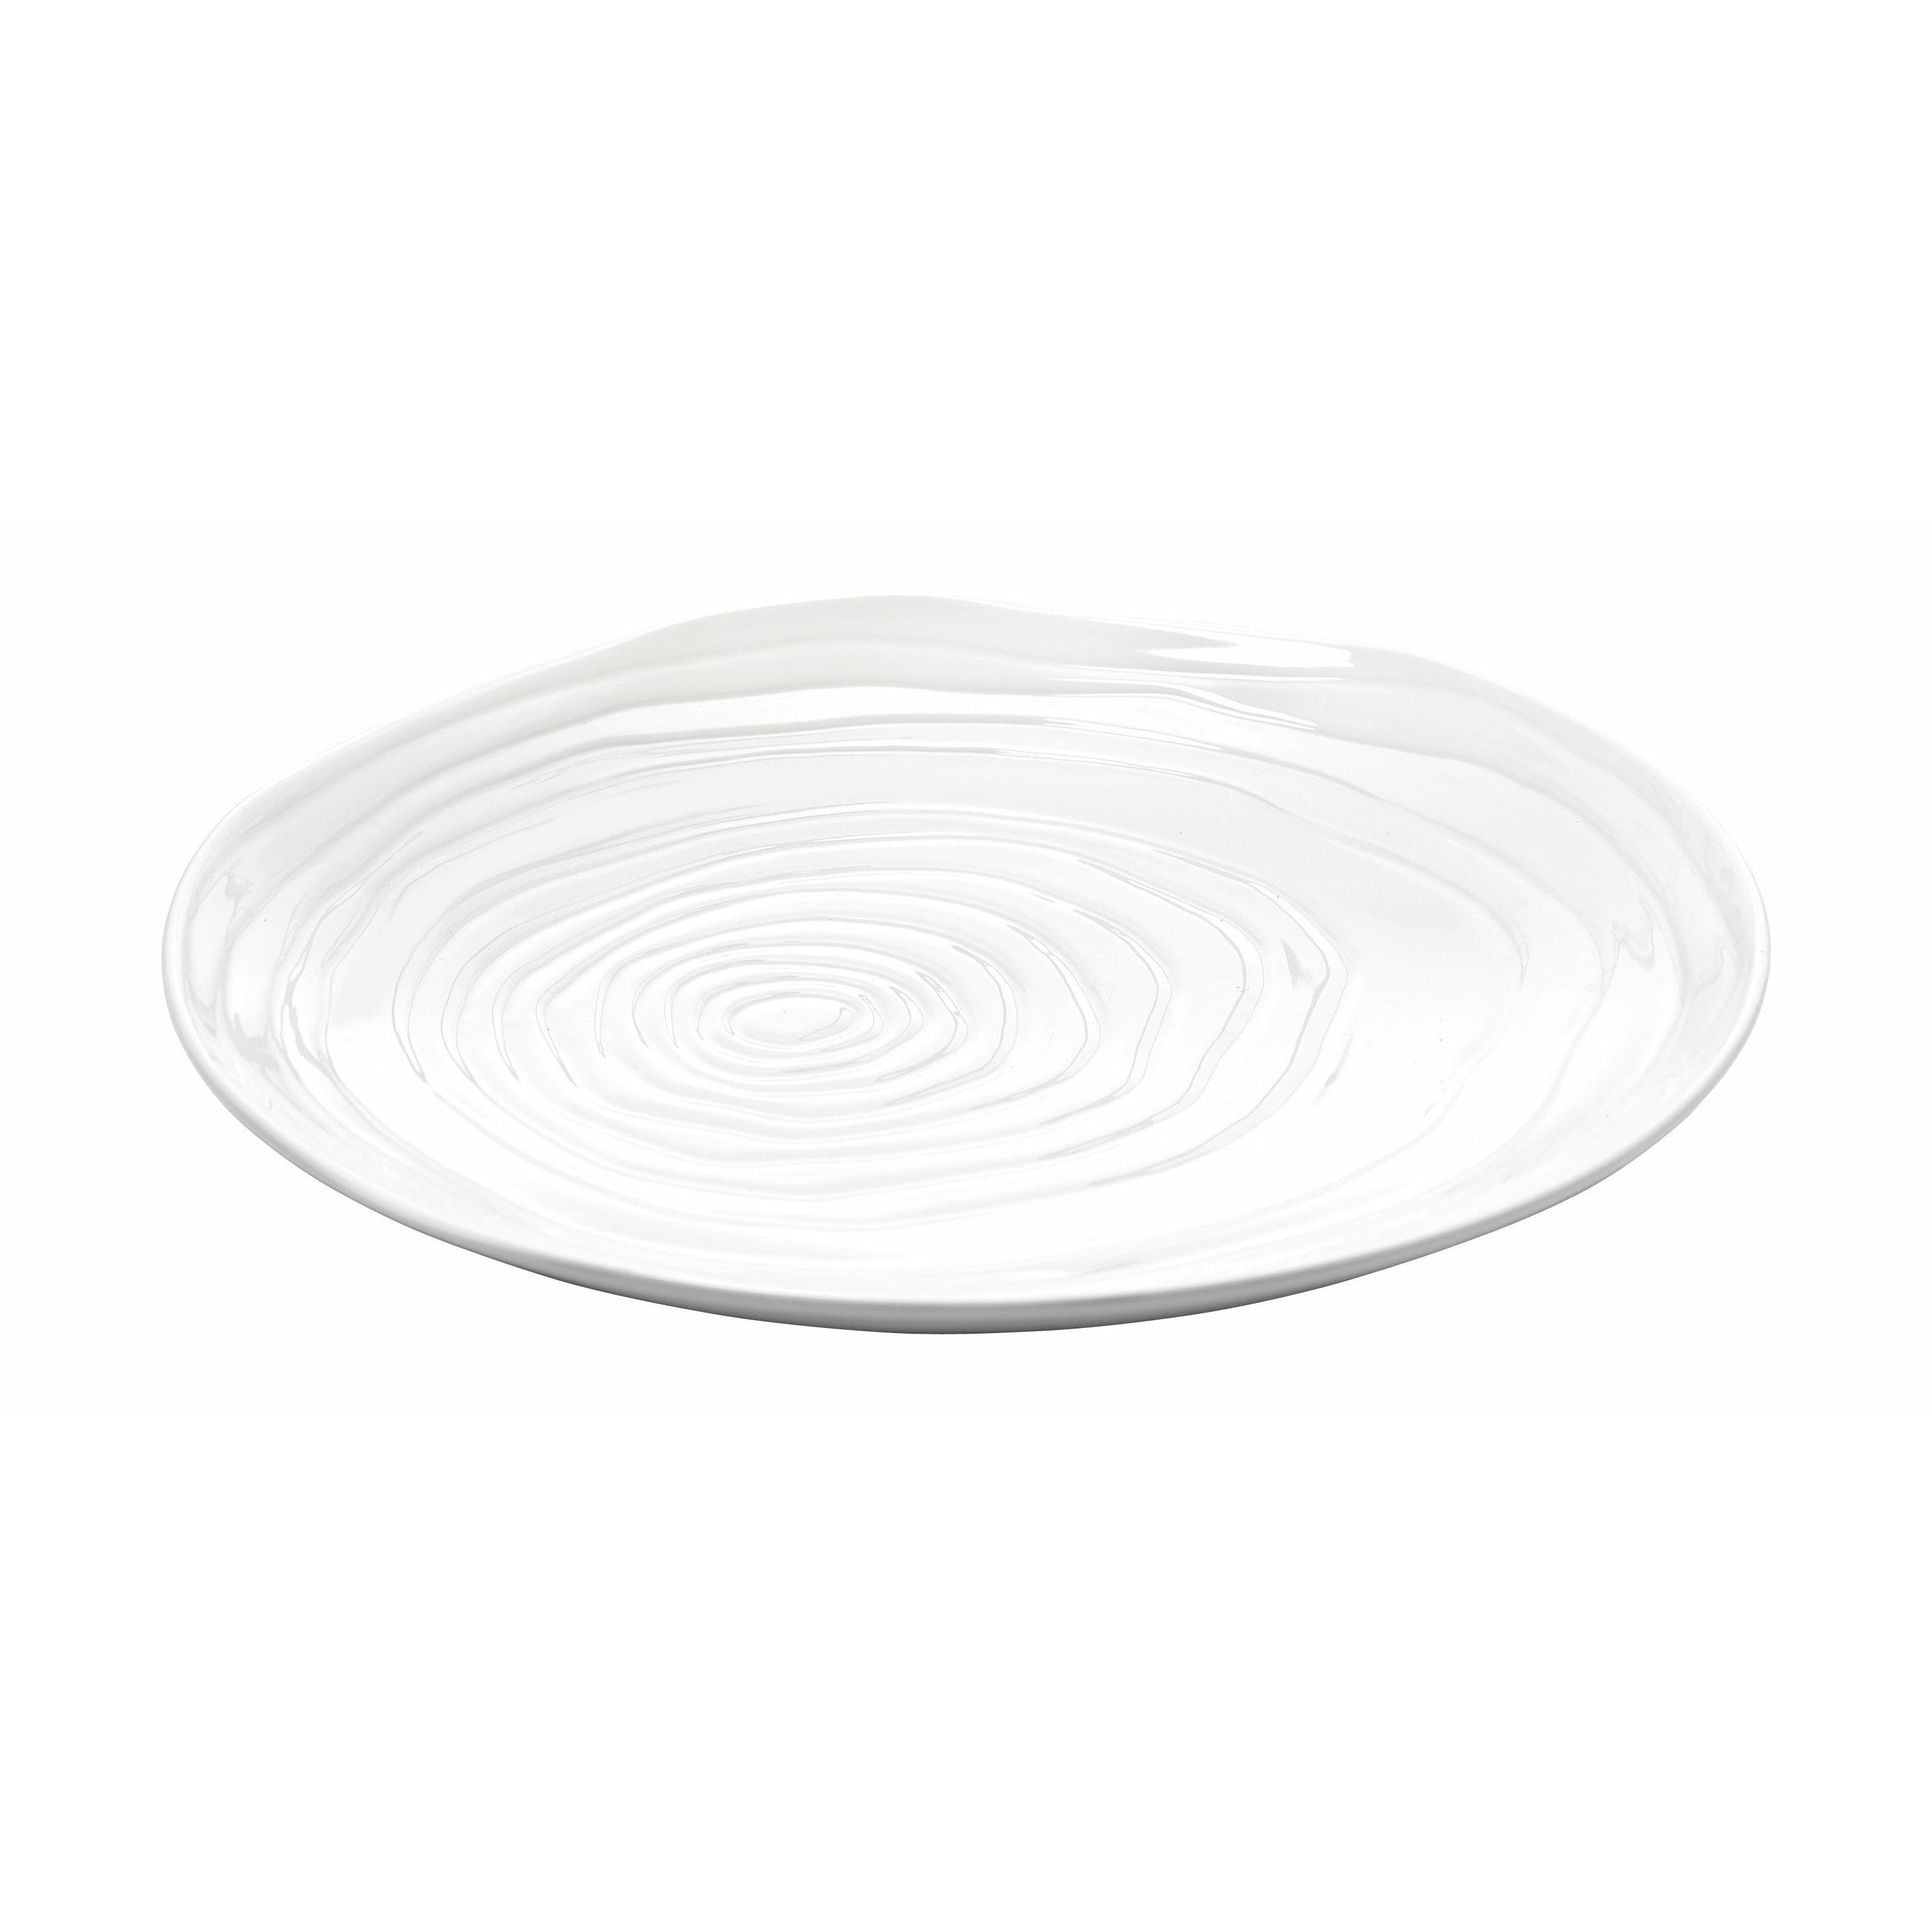 Pillivuyt Boulogne Plate White, 21 cm